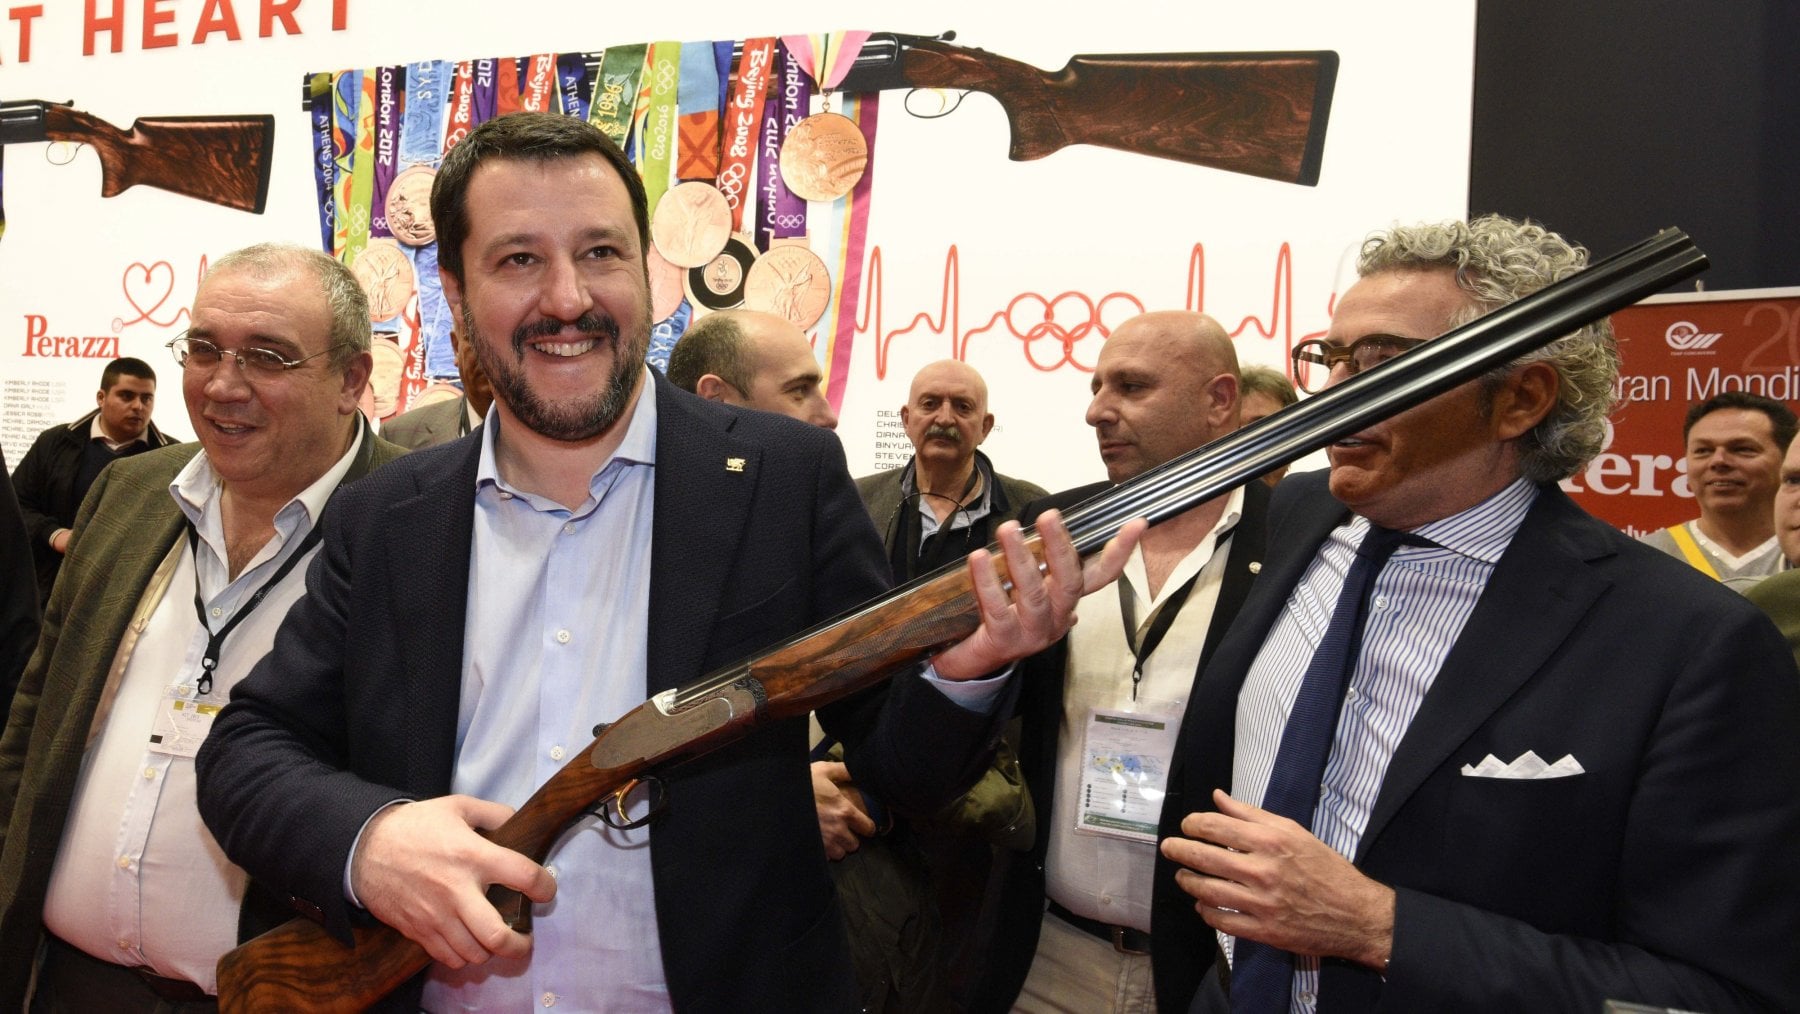 Salvini il finto buono: "Pensiamo ai bambini, non alle armi". Lo dica ai minori annegati nel Mediterraneo